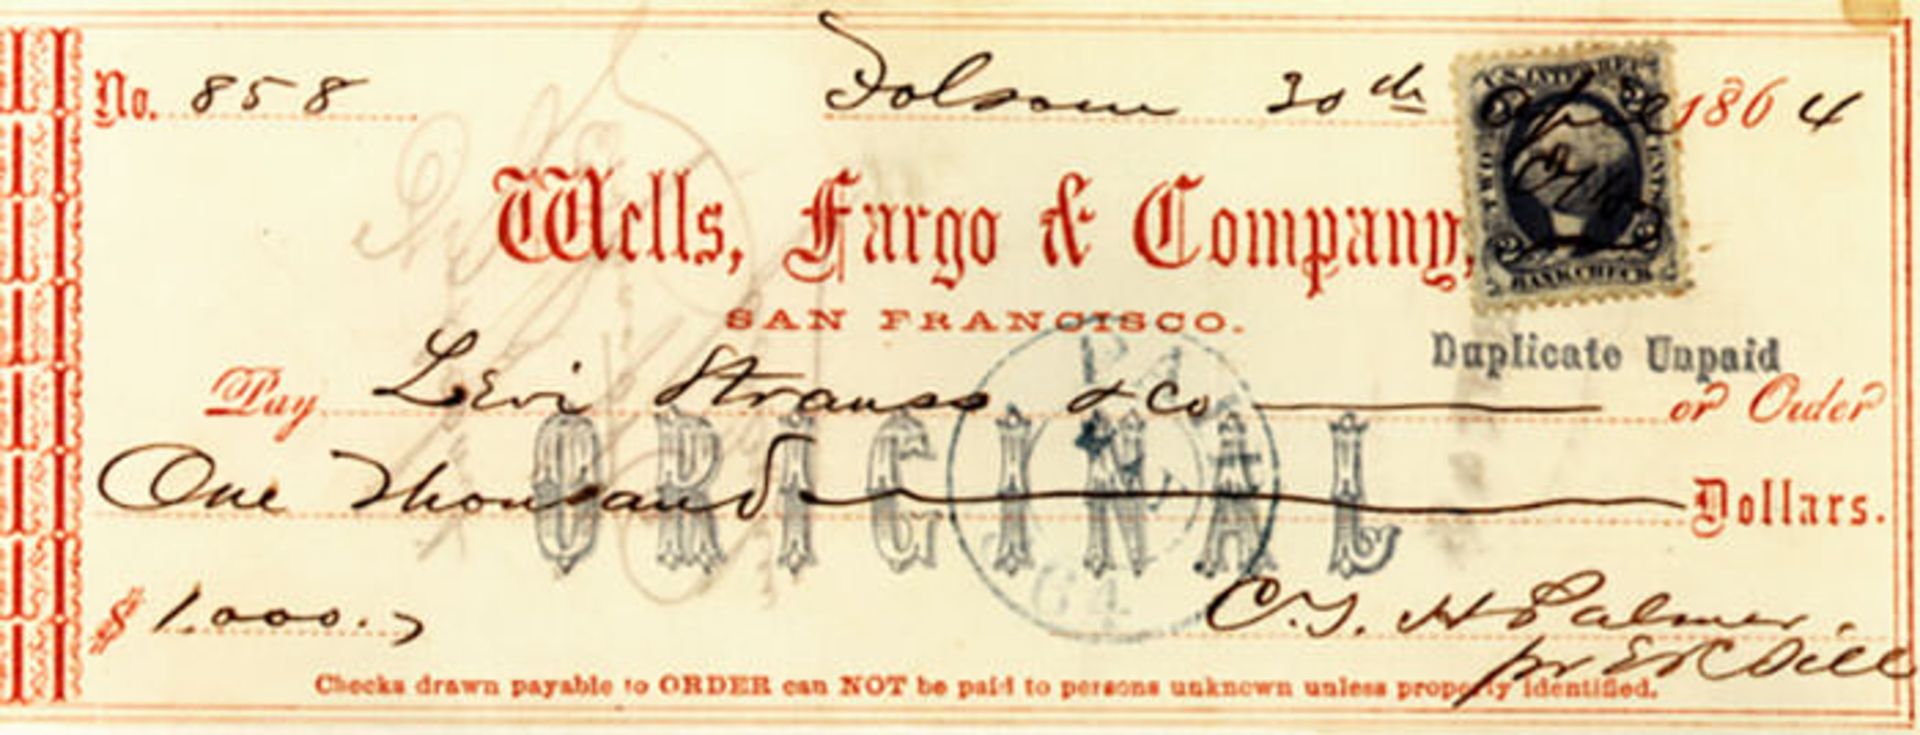 ولز فارگو / Wells Fargo